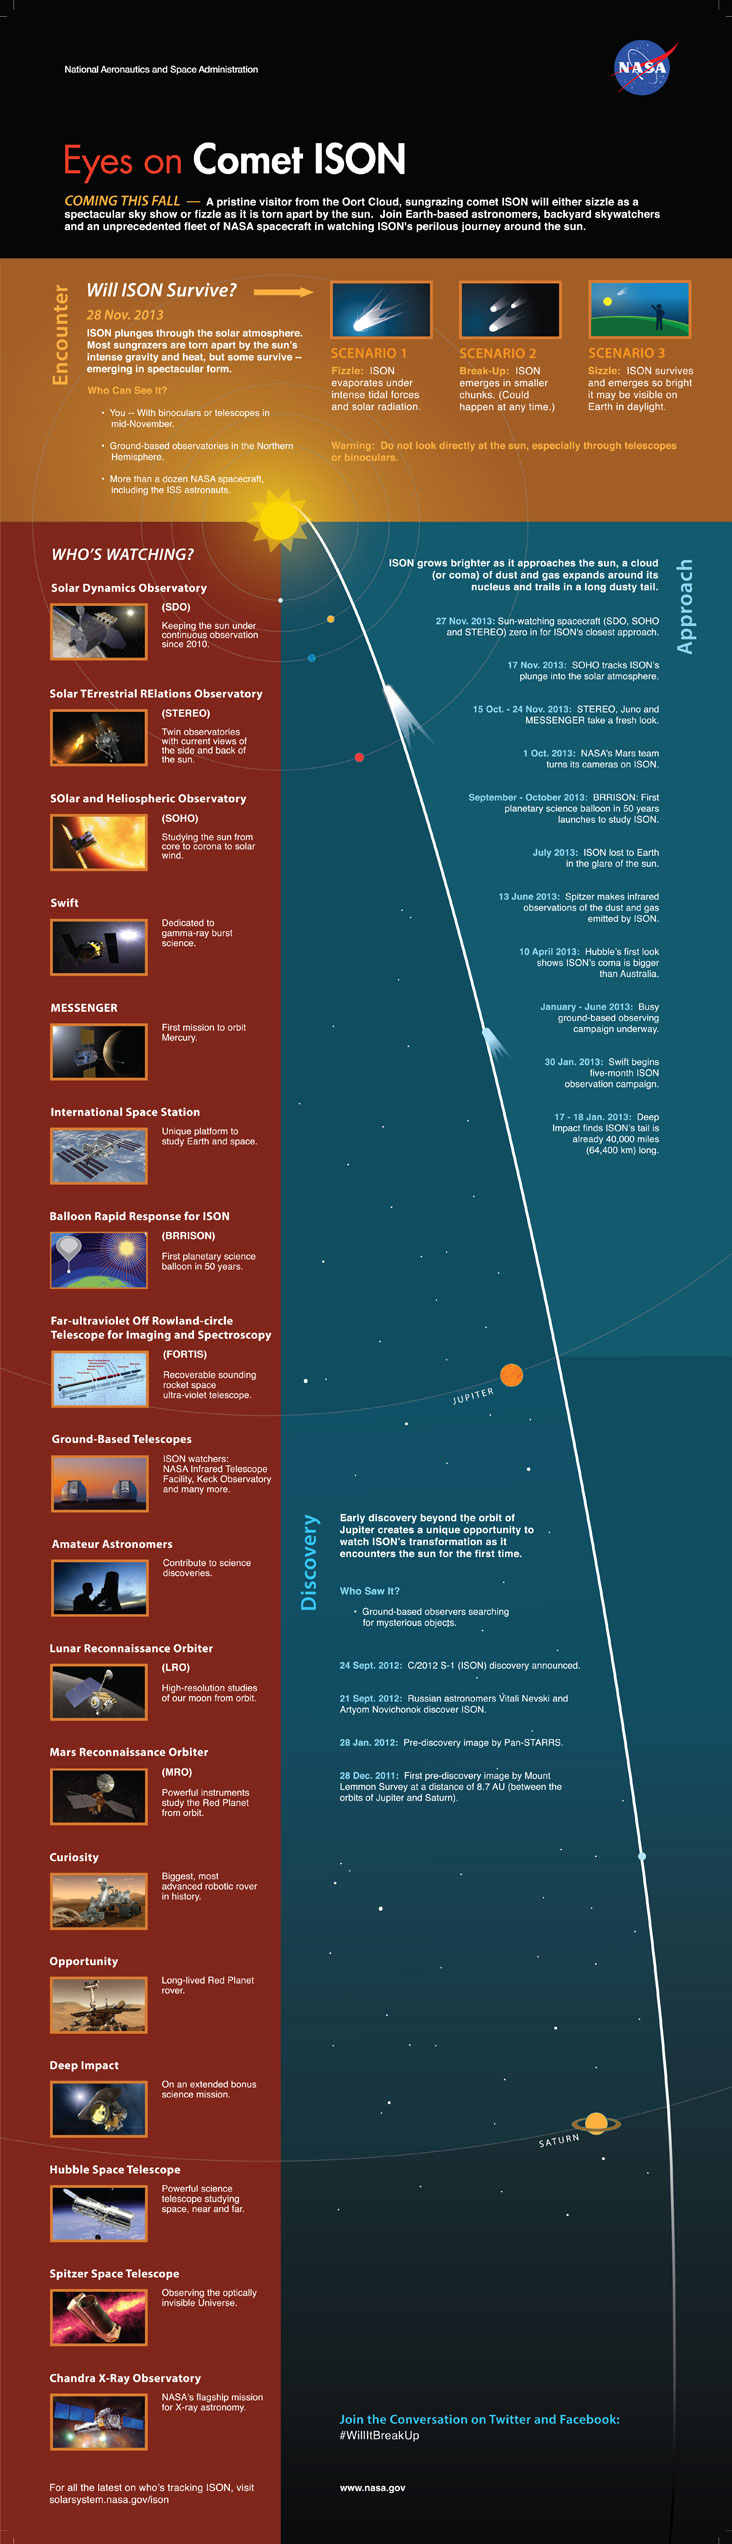 Cometa ISON infografía de la NASA